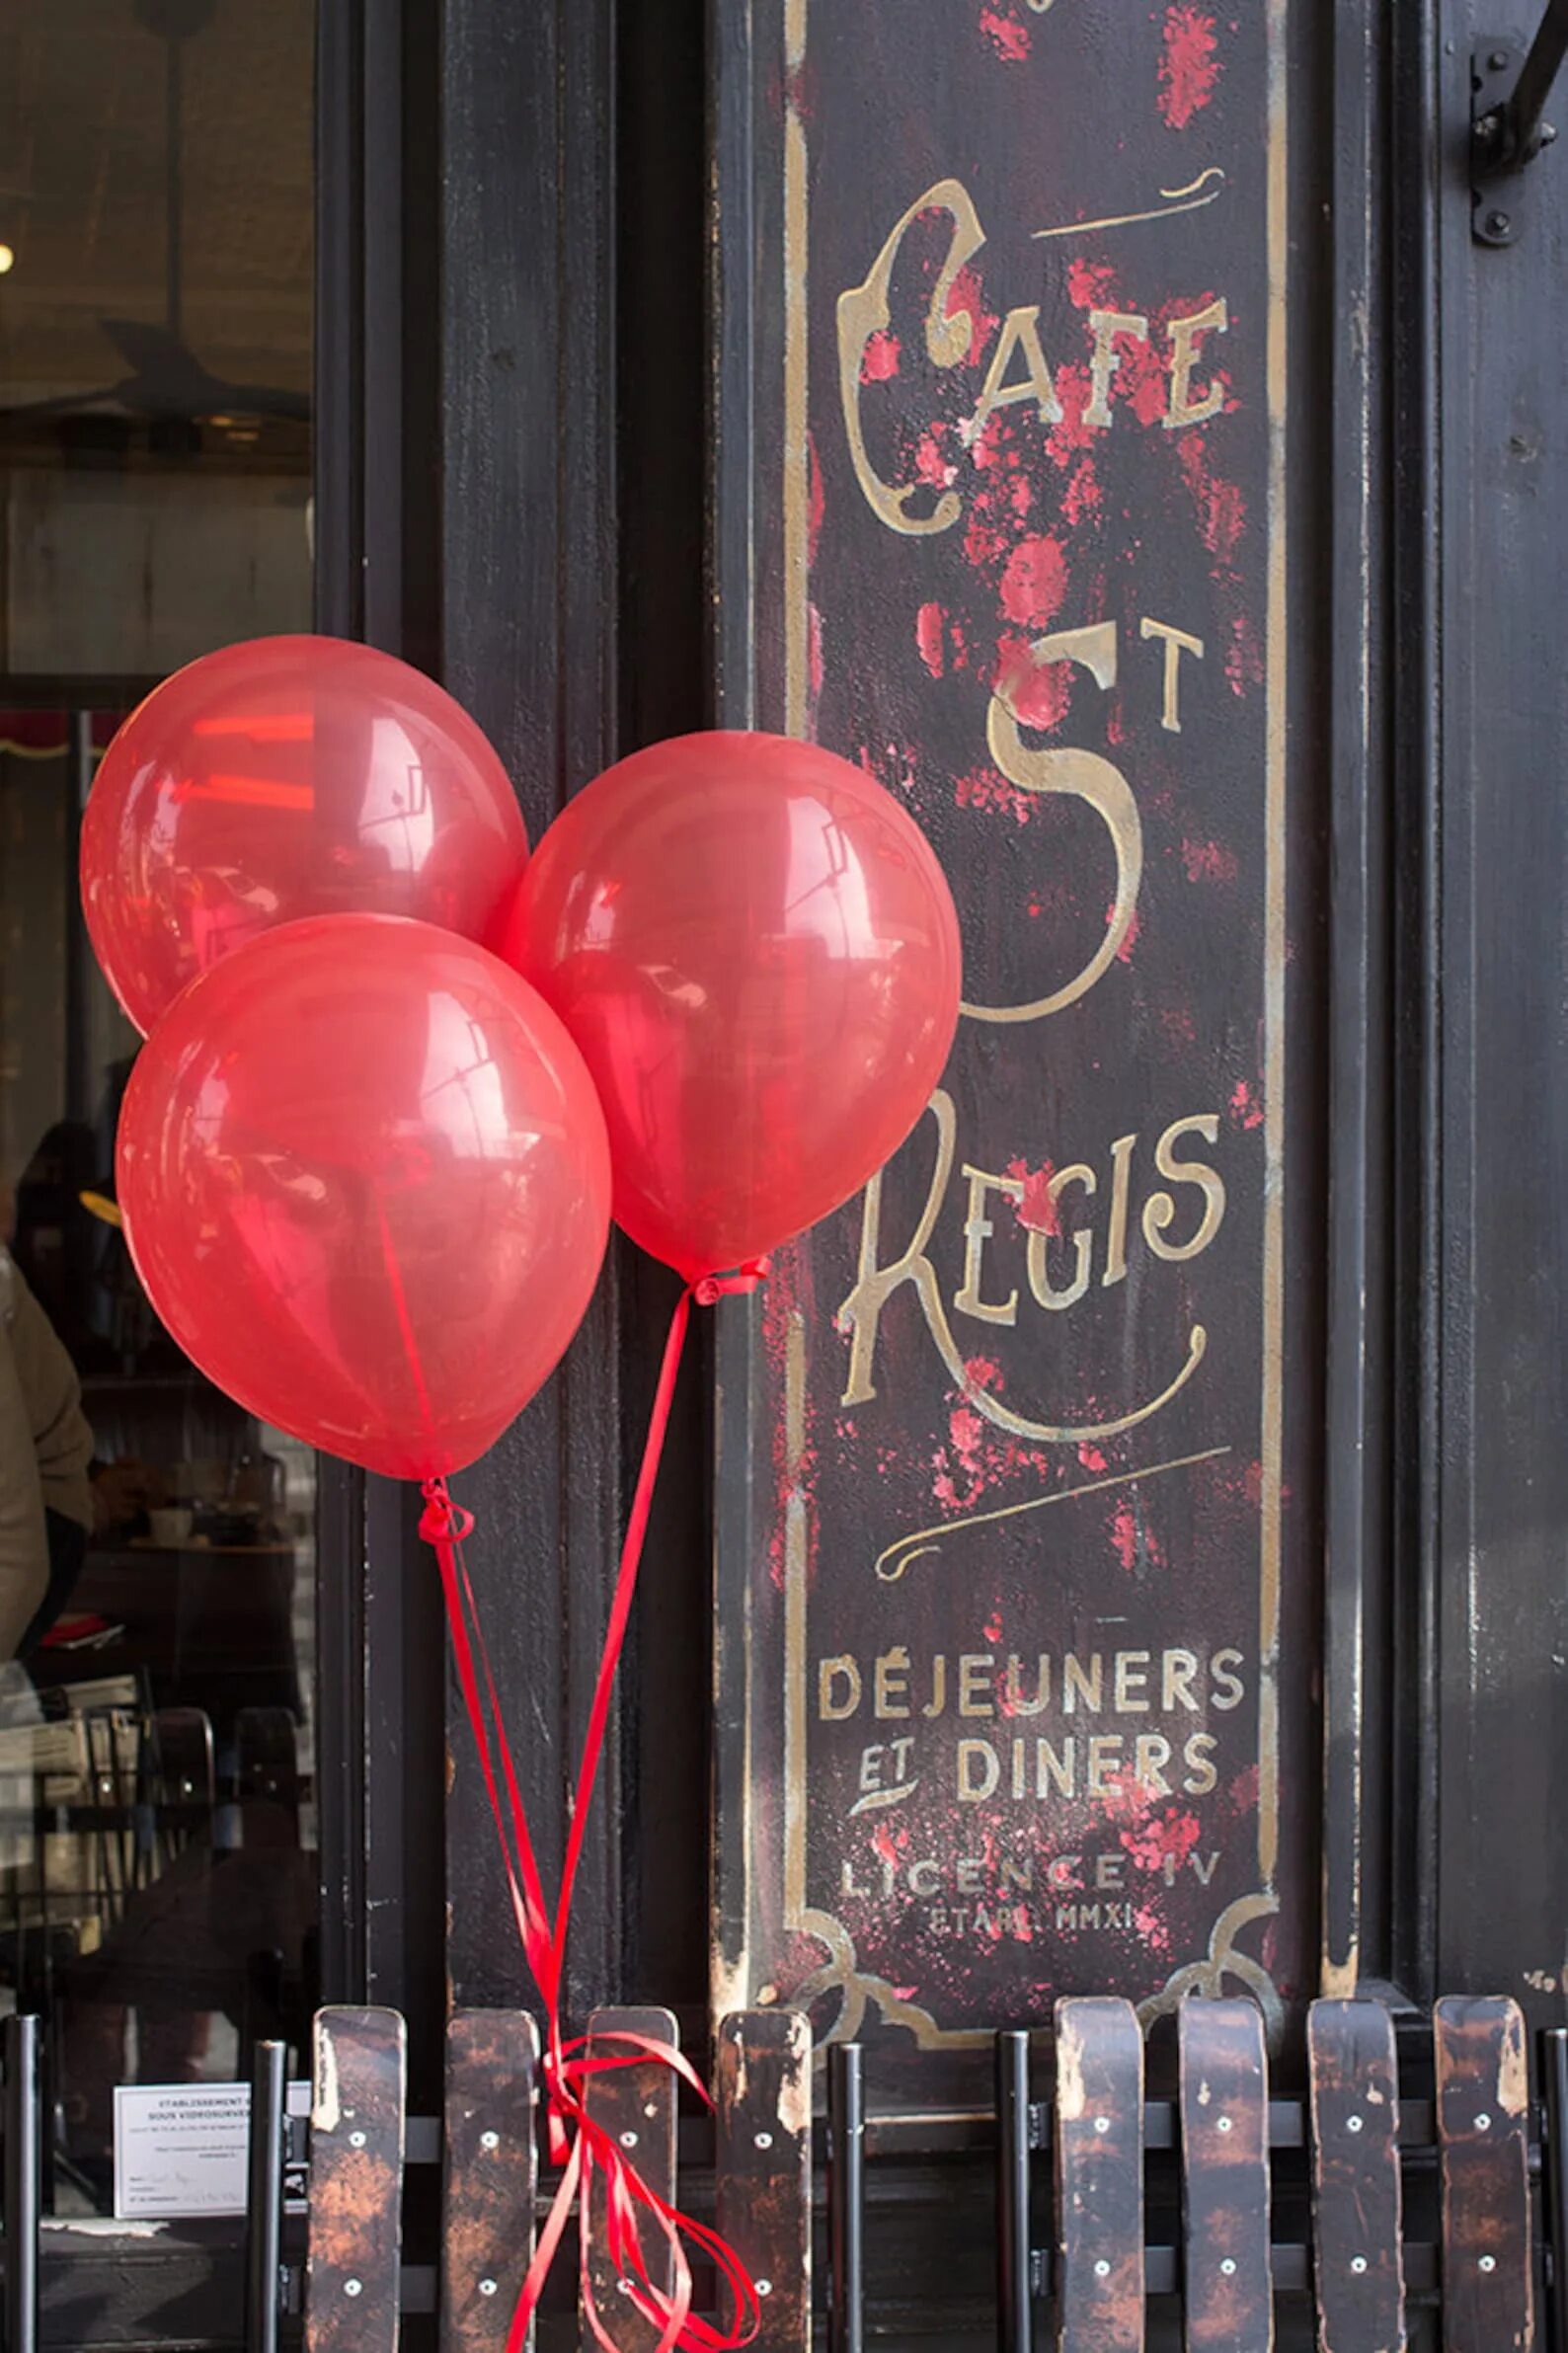 Шарами парижа. Воздушные шары Париж. Париж и шарики. Париж кафе воздушные шары. Воздушный шар в Париже.